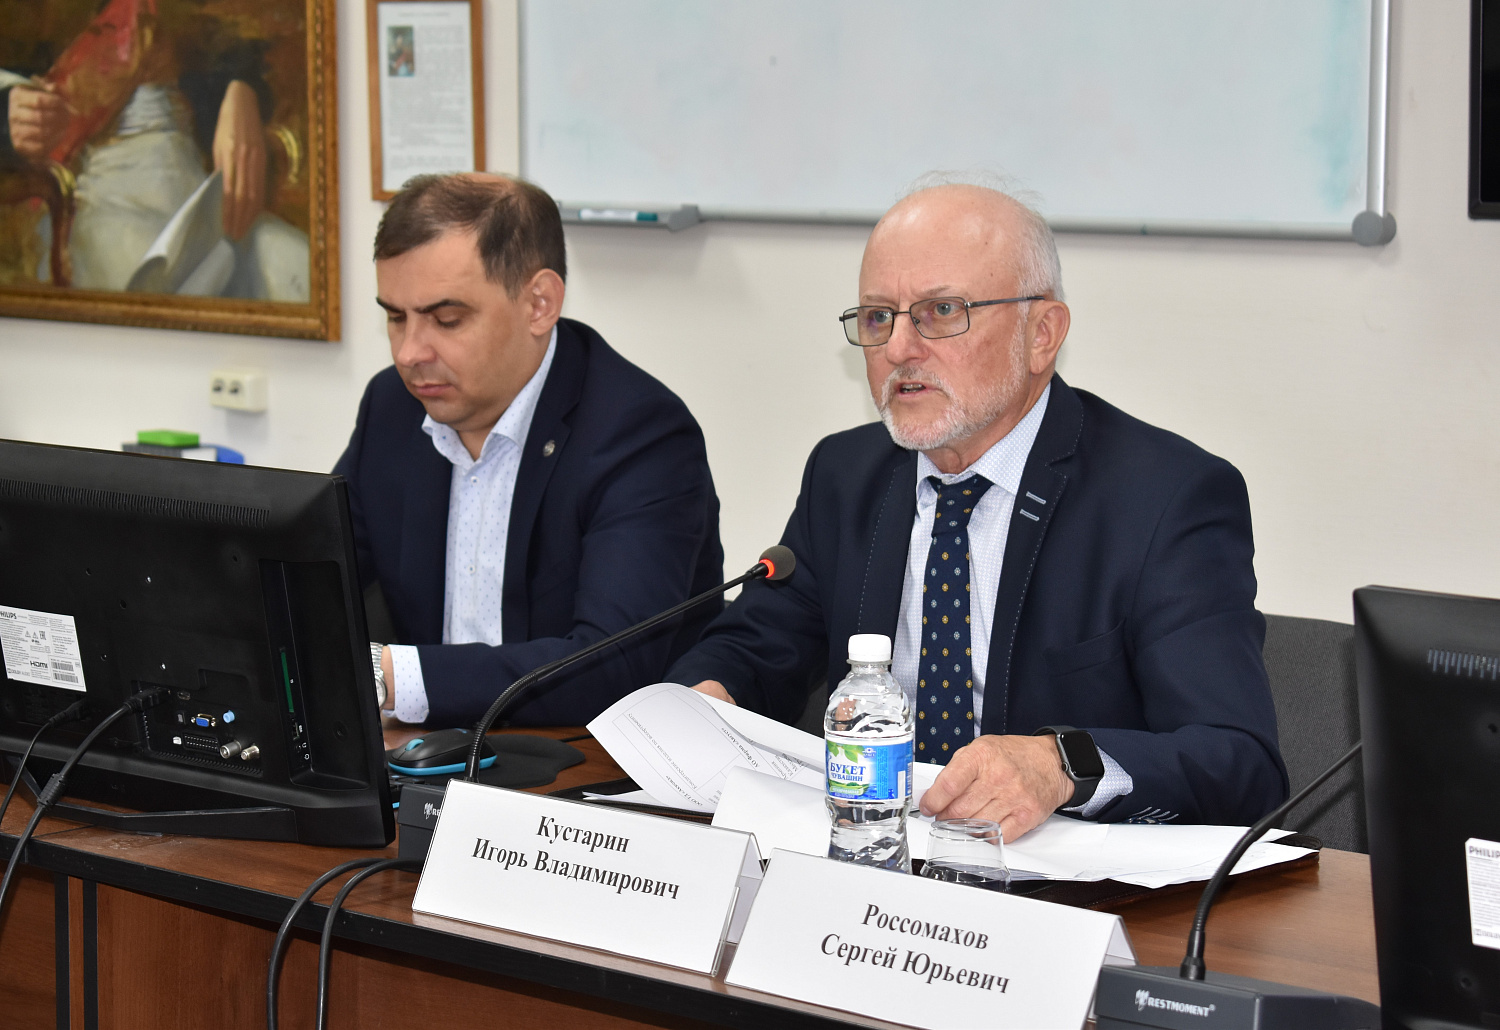 29 июня 2022 г. в Торгово-промышленной палате Чувашской Республики состоялась рабочая встреча с торговыми представителями Российской Федерации